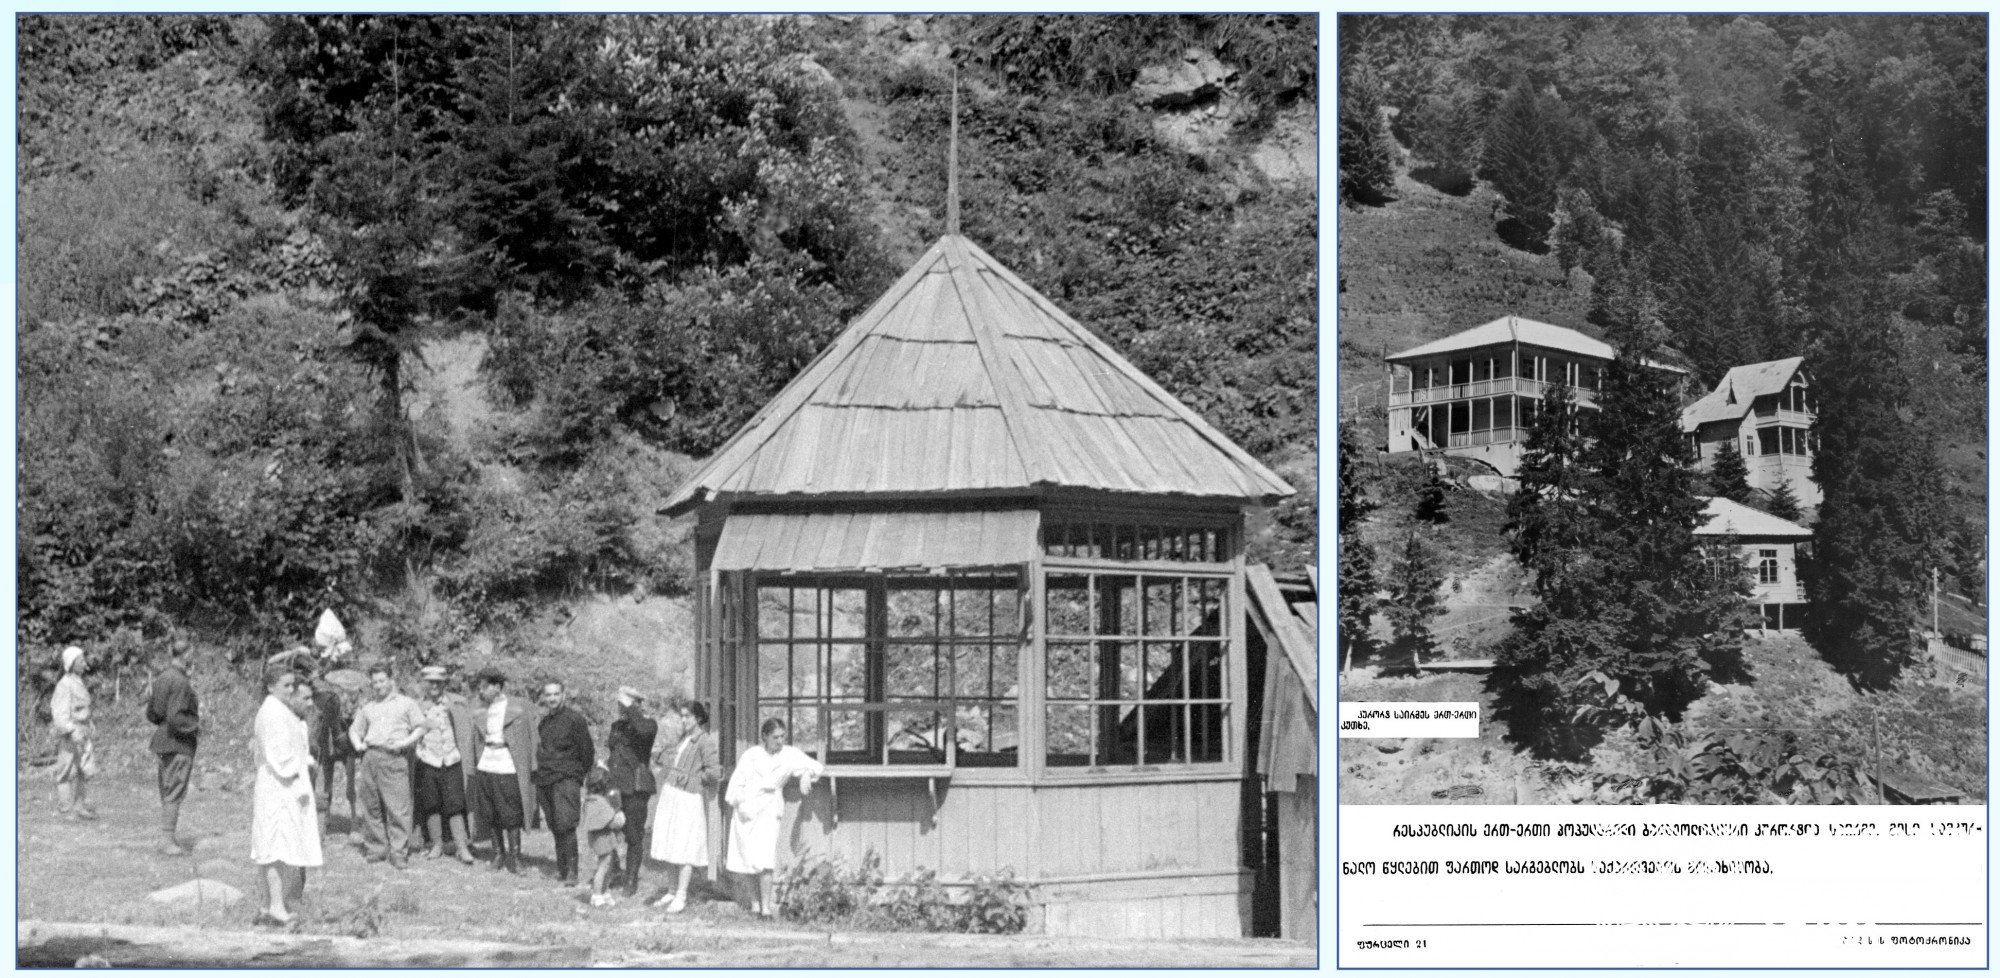 მარცხენა: მინერალური წყარო, საირმე, ბაღდათის მუნიციპალიტეტი, 1944 წელი. <br>
მარჯვენა: დასასვენებელი კოტეჯები. საირმე, ბაღდათის მუნიციპალიტეტი, 1957 წელი. <br>

საირმე — ბალნეოკლიმატური კურორტი ბაღდათის მუნიციპალიტეტში. მდებარეობს მესხეთის ქედის ჩრდილოეთ კალთაზე, მდინარე წაბლარისწყლის ხეობაში, ზღვის დონიდან 950 მეტრის სიმაღლეზე. ცნობილია საშუალო მთის ქვედა სარტყლის ჰავითა და ნახშირმჟავიანი, კაჟიანი, ბორიანი, რკინიანი მინერალური წყლებით. მინერალური წყლების მეცნიერული შესწავლის პირველი მცდელობა ექიმ გაბრიელ კელენჯერიძეს უკავშირდება. 1912 წელს მან საირმეში აღებული ნიმუშები გამოსაკვლევად პეტერბურგში წაიღო. 1930-იან წლებში საირმეს კურორტის სტატუსი ოფიციალურად მიენიჭა. აშენდა პირველი სანატორიუმები, გაიმართა საკურორტო ინფრასტრუქტურა. 1945 წელს დაიწყო საირმის წყლის ქარხნული წესით ჩამოსხმაც.
<br>

Sairme – balneoclimatic resort in Baghdati Municipality. It is located on the northern slope of the Meskheti range, in the gorge of the Tsablaristskali River, at an altitude of 950 meters above the sea level. It is famous for its middle mountain lowland climate and carbonic, acidic, boron, iron mineral waters. The first attempt of a scientific study of mineral waters is connected with the name of Dr. Gabriel Kelenjeridze. In 1912, he carried the samples taken in Sairme to St. Petersburg for examination. In the 1930s, Sairme was officially granted the resort status. The first sanatoriums were built, the resort infrastructure was maintained. In 1945, the Sairme water bottling plant was opened. <br>